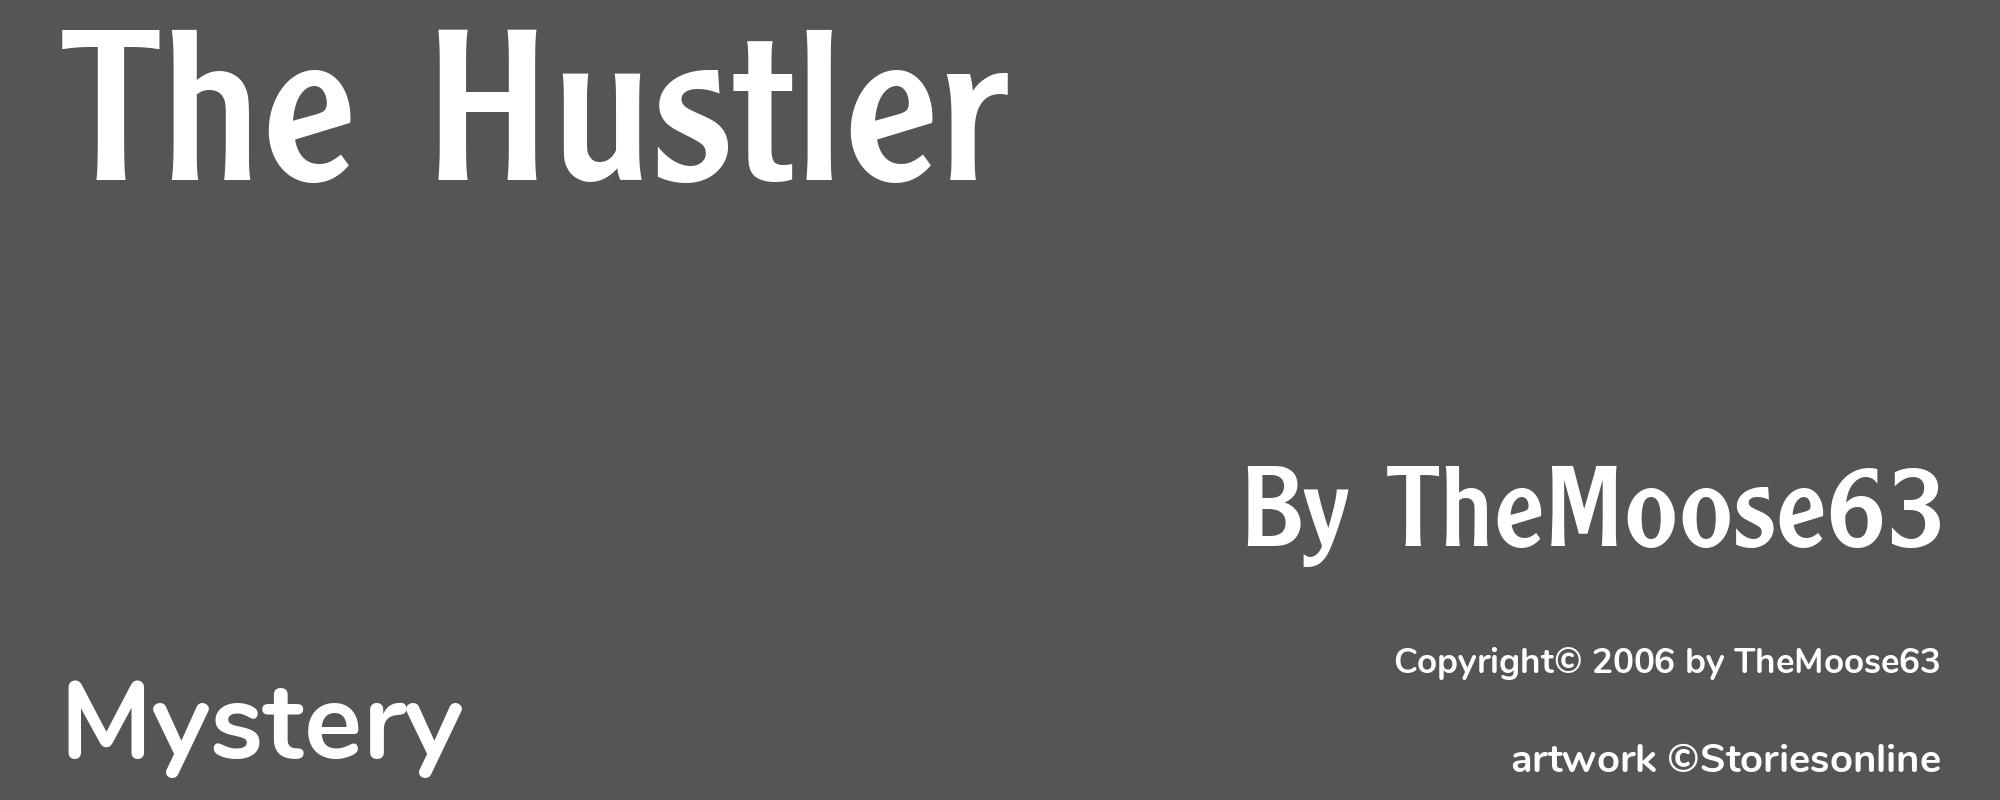 The Hustler - Cover